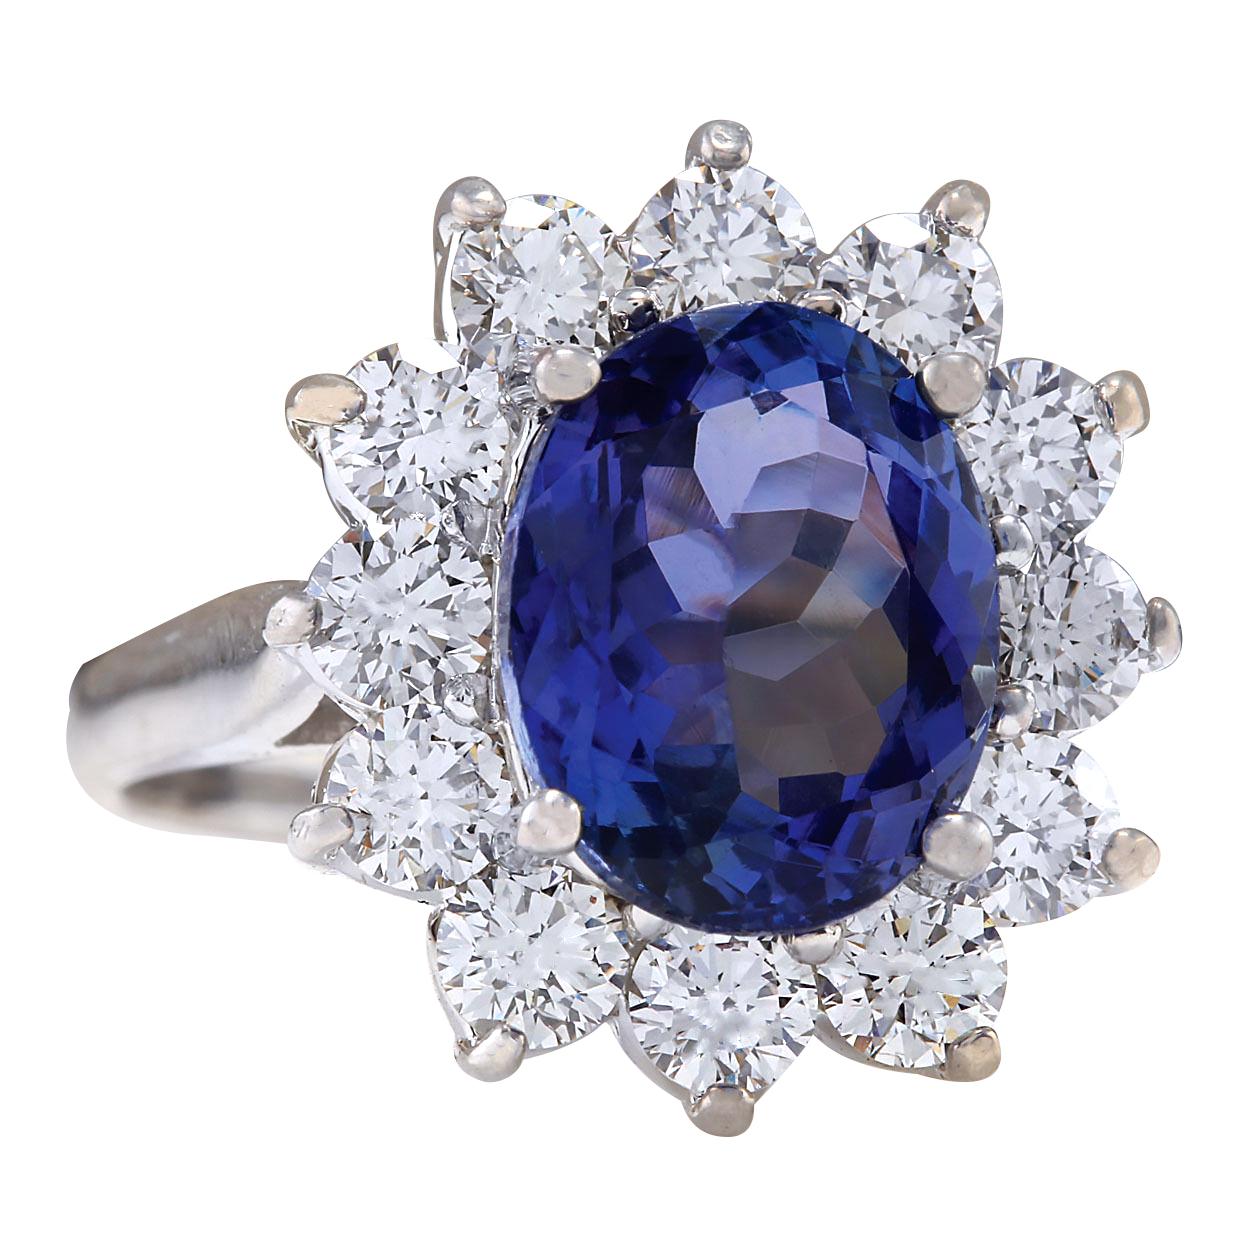 5.44 Carat Tanzanite 14 Karat White Gold Diamond Ring
Stamped: 14K White Gold
Total Ring Weight: 5.8 Grams
Total  Tanzanite Weight is 4.02 Carat (Measures: 11.00x9.00 mm)
Color: Blue
Total  Diamond Weight is 1.42 Carat
Color: F-G, Clarity: